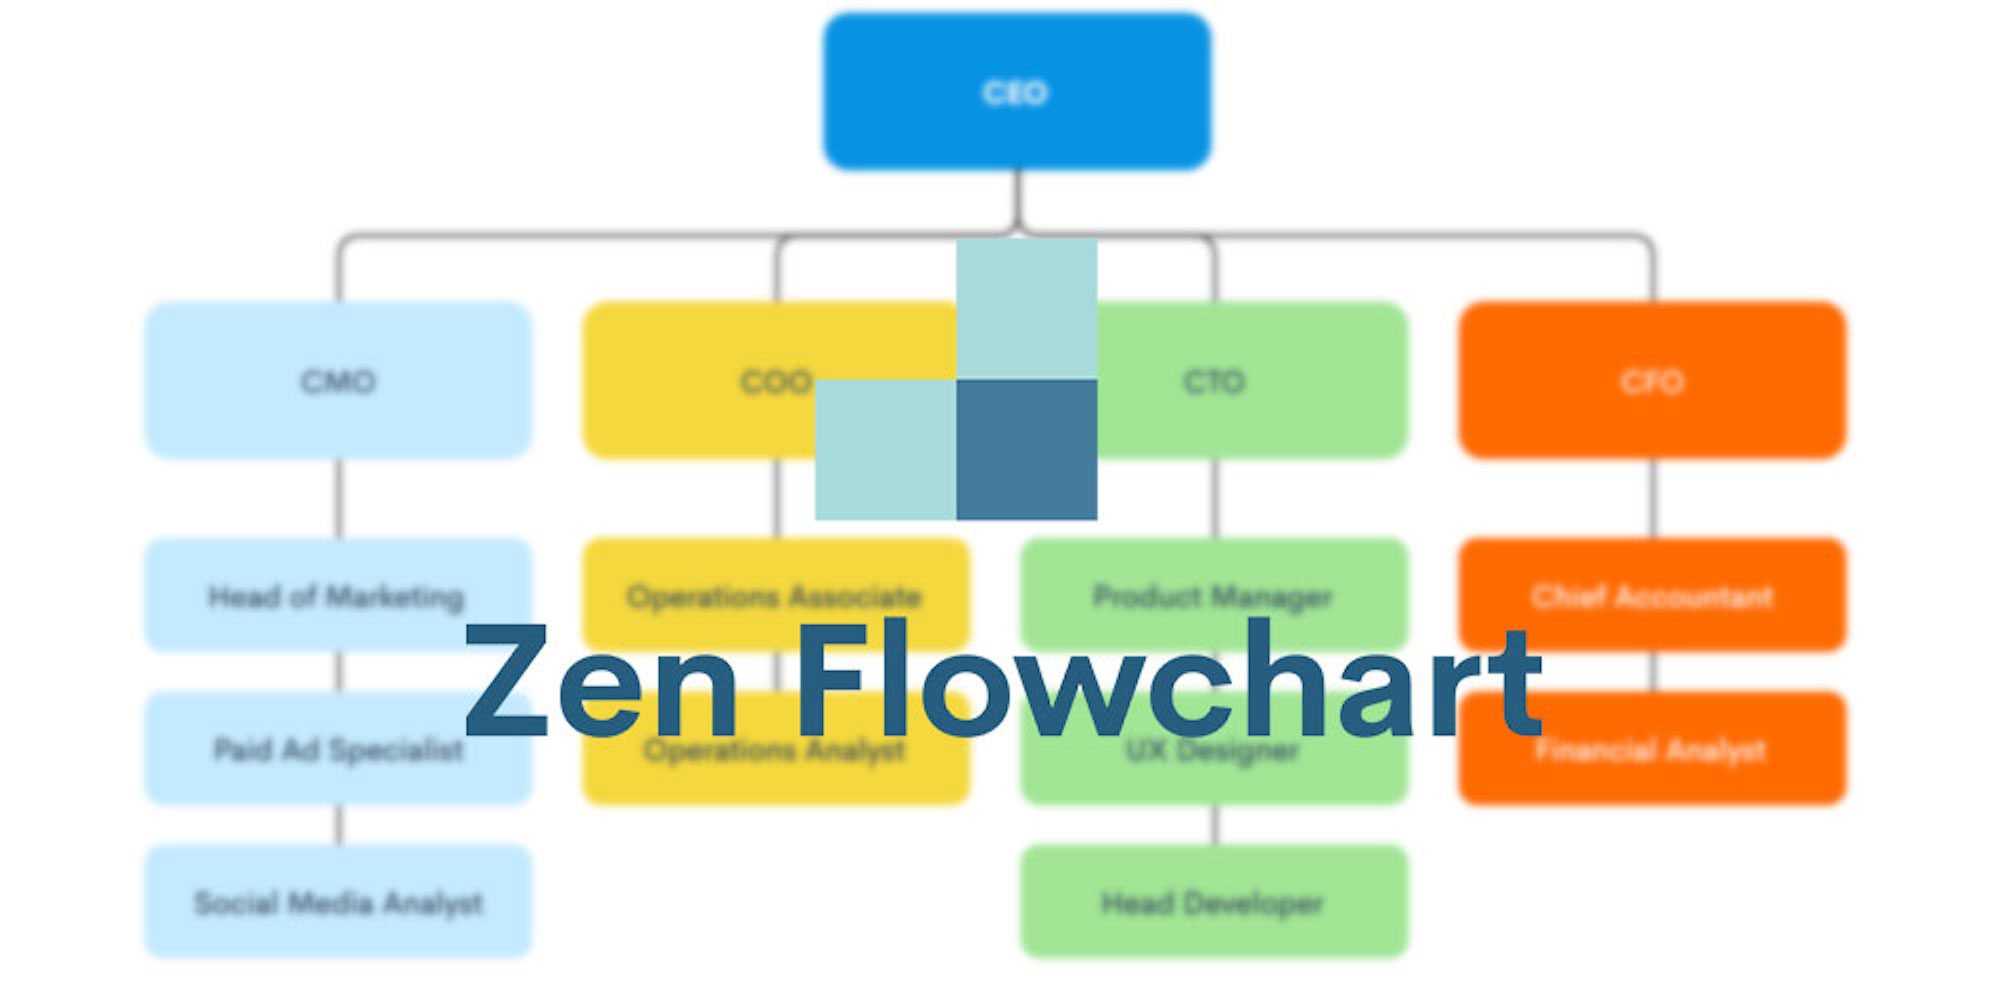 Zen Flowchart is the best